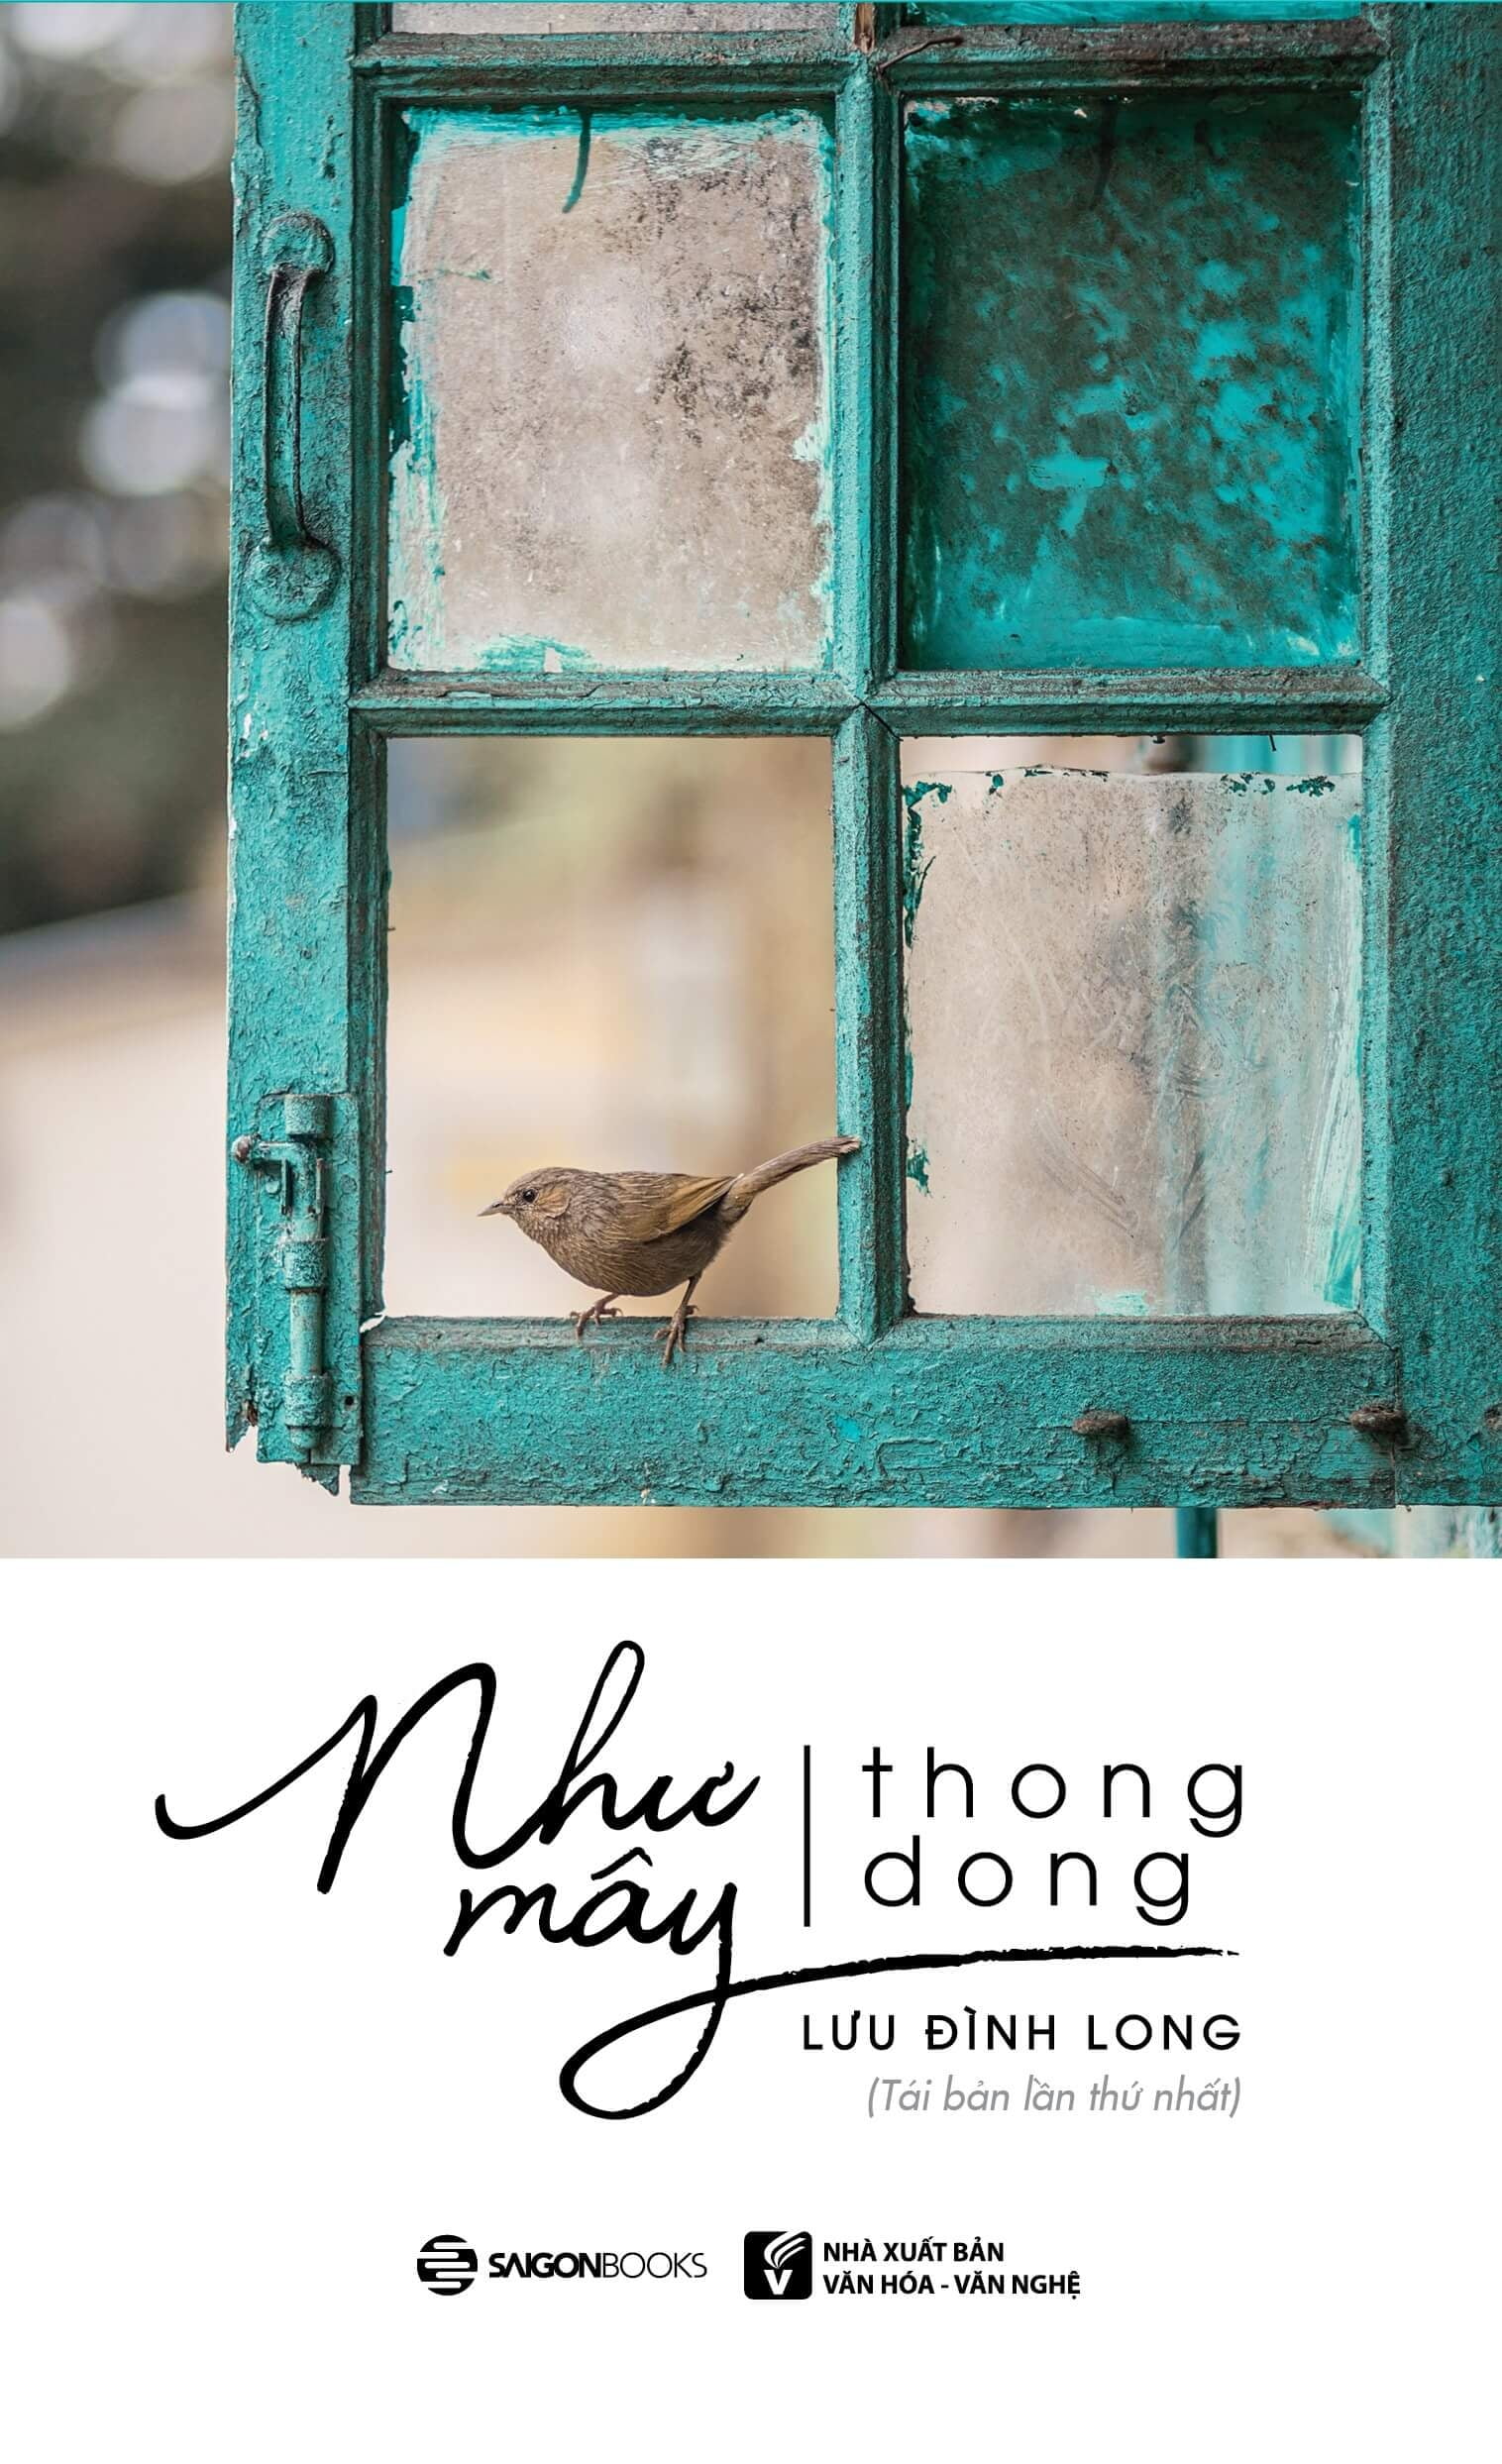 Như Mây Thong Dong ()